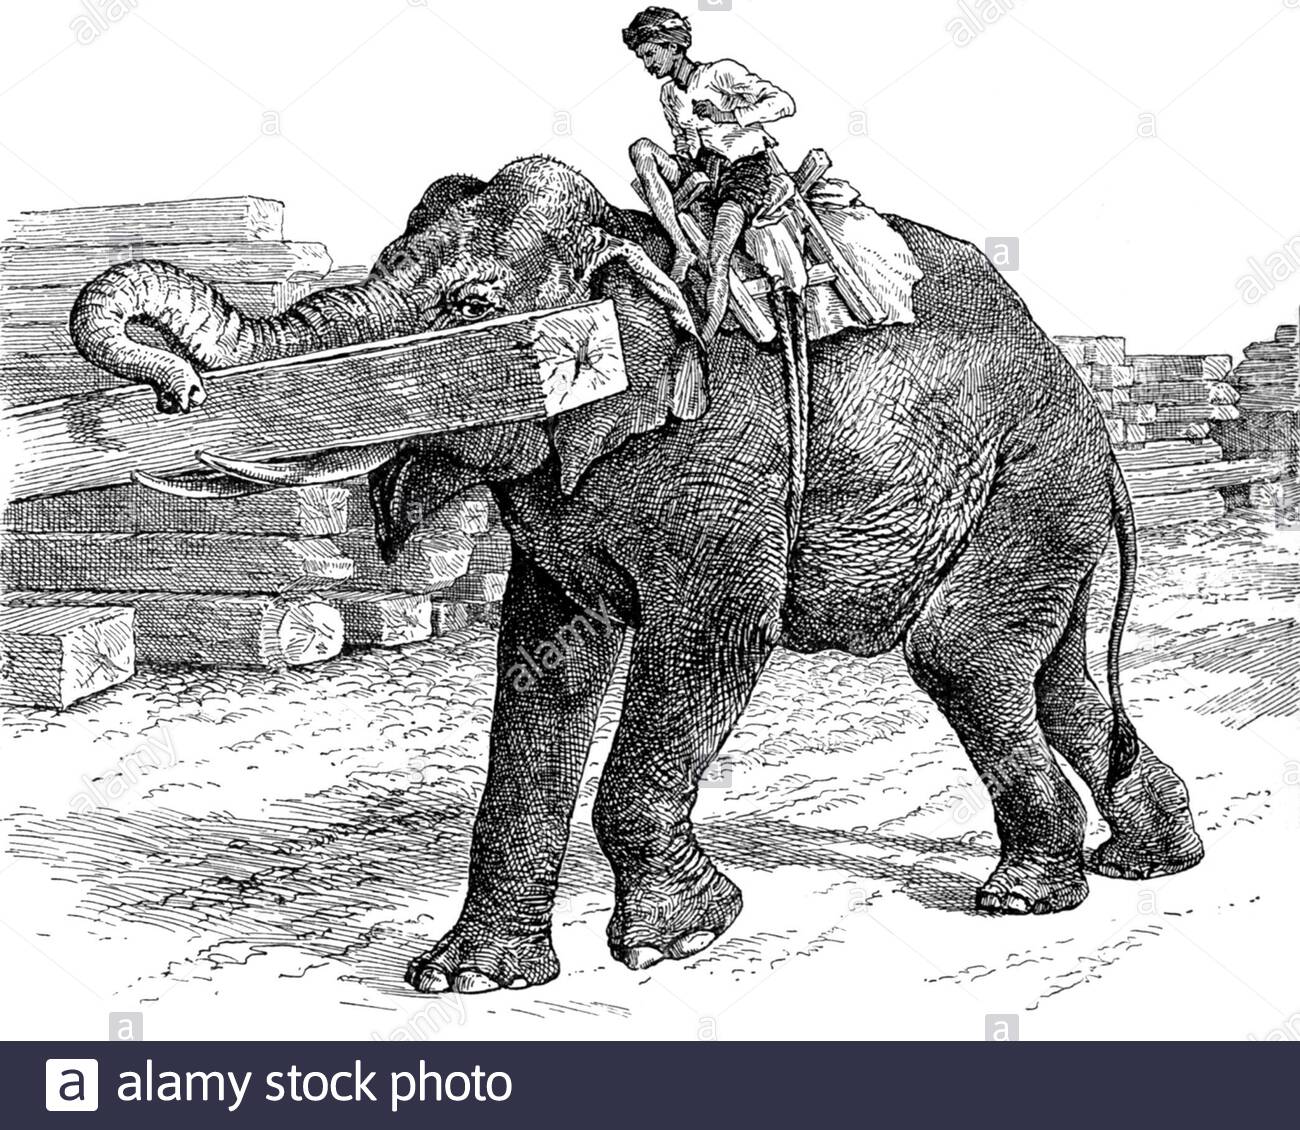 Indisches Elefantenstapelholz, Vintage Illustration von 1894 Stockfoto